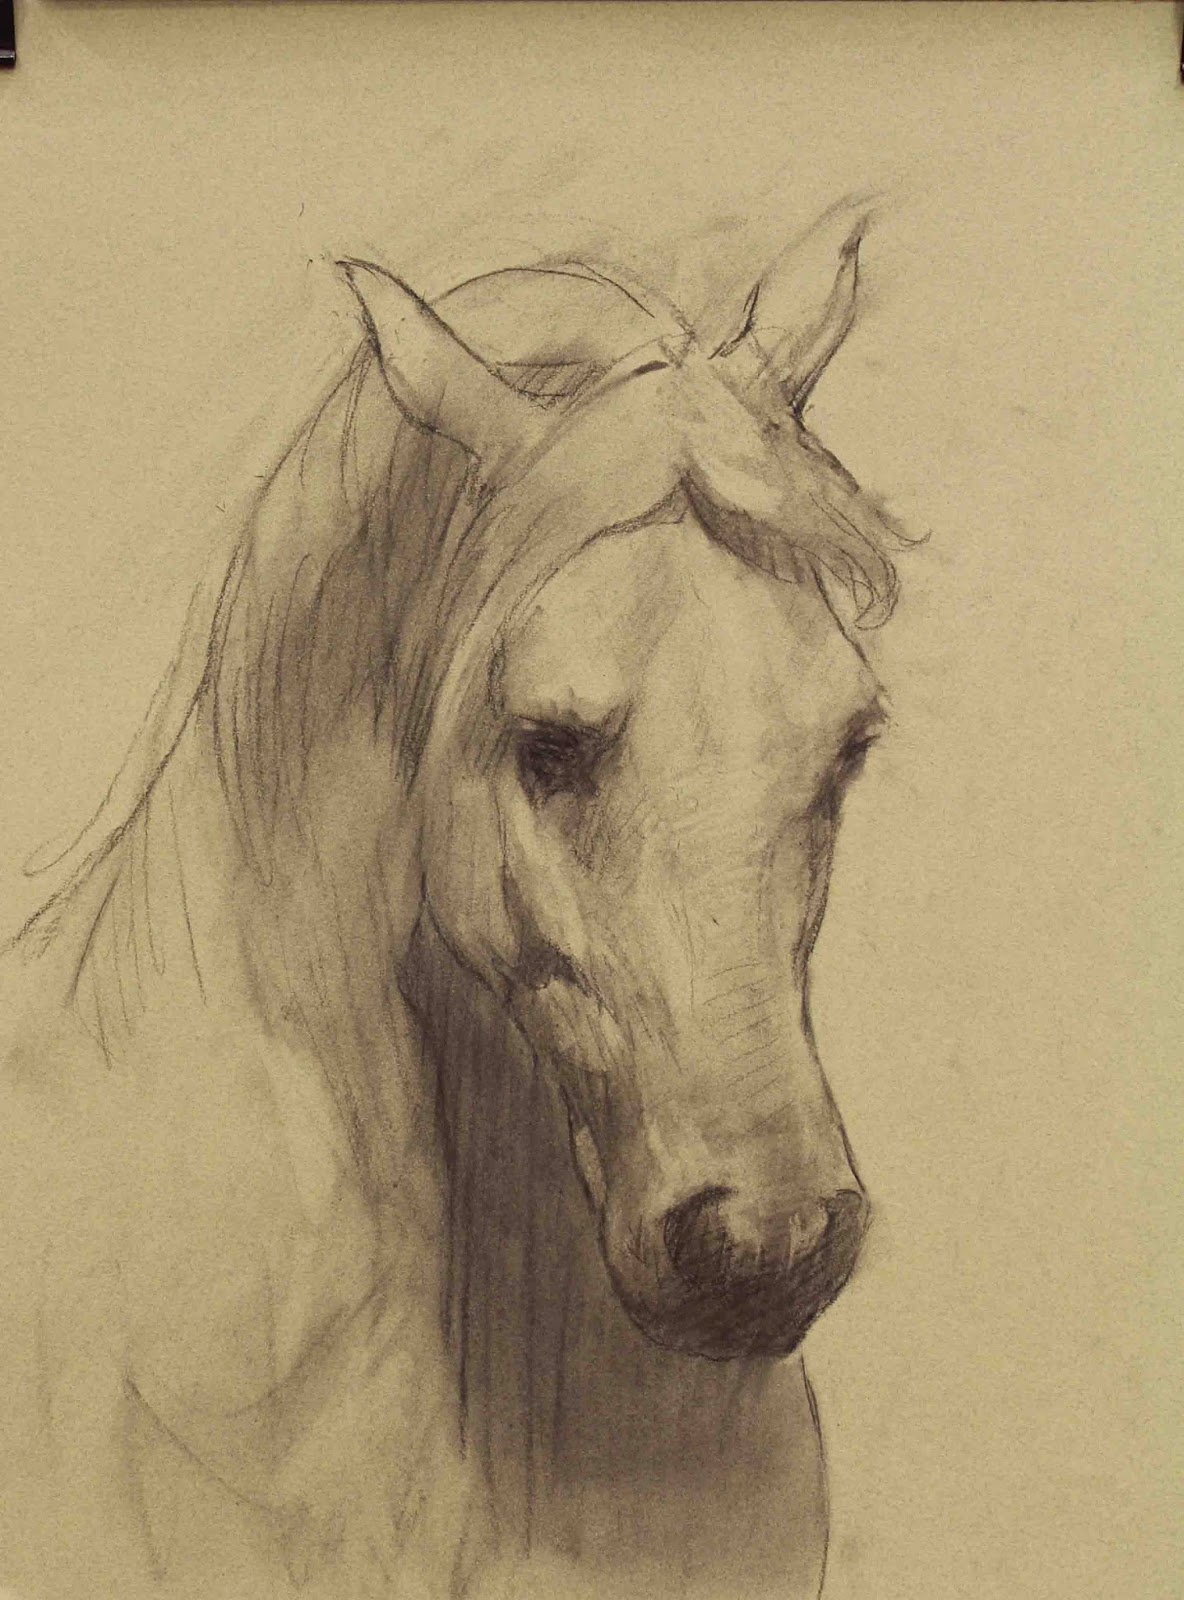 Como desenhar um cavalo passo a passo realista - Como desenhar